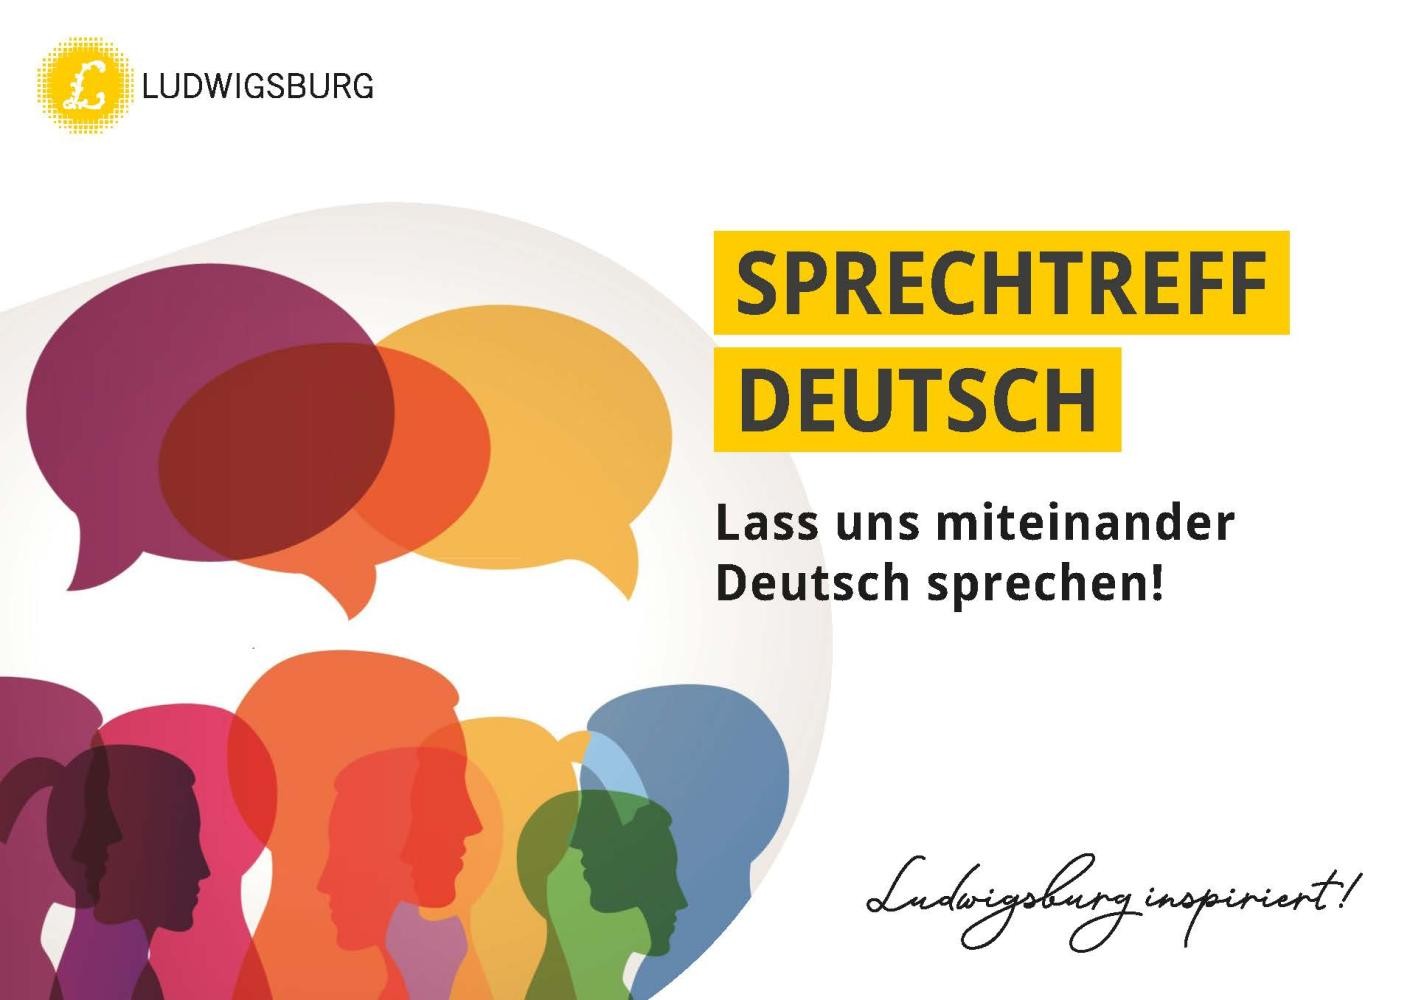 Sprechteff Deutsch Postkarte Illustration Menschen und Sprechblasen